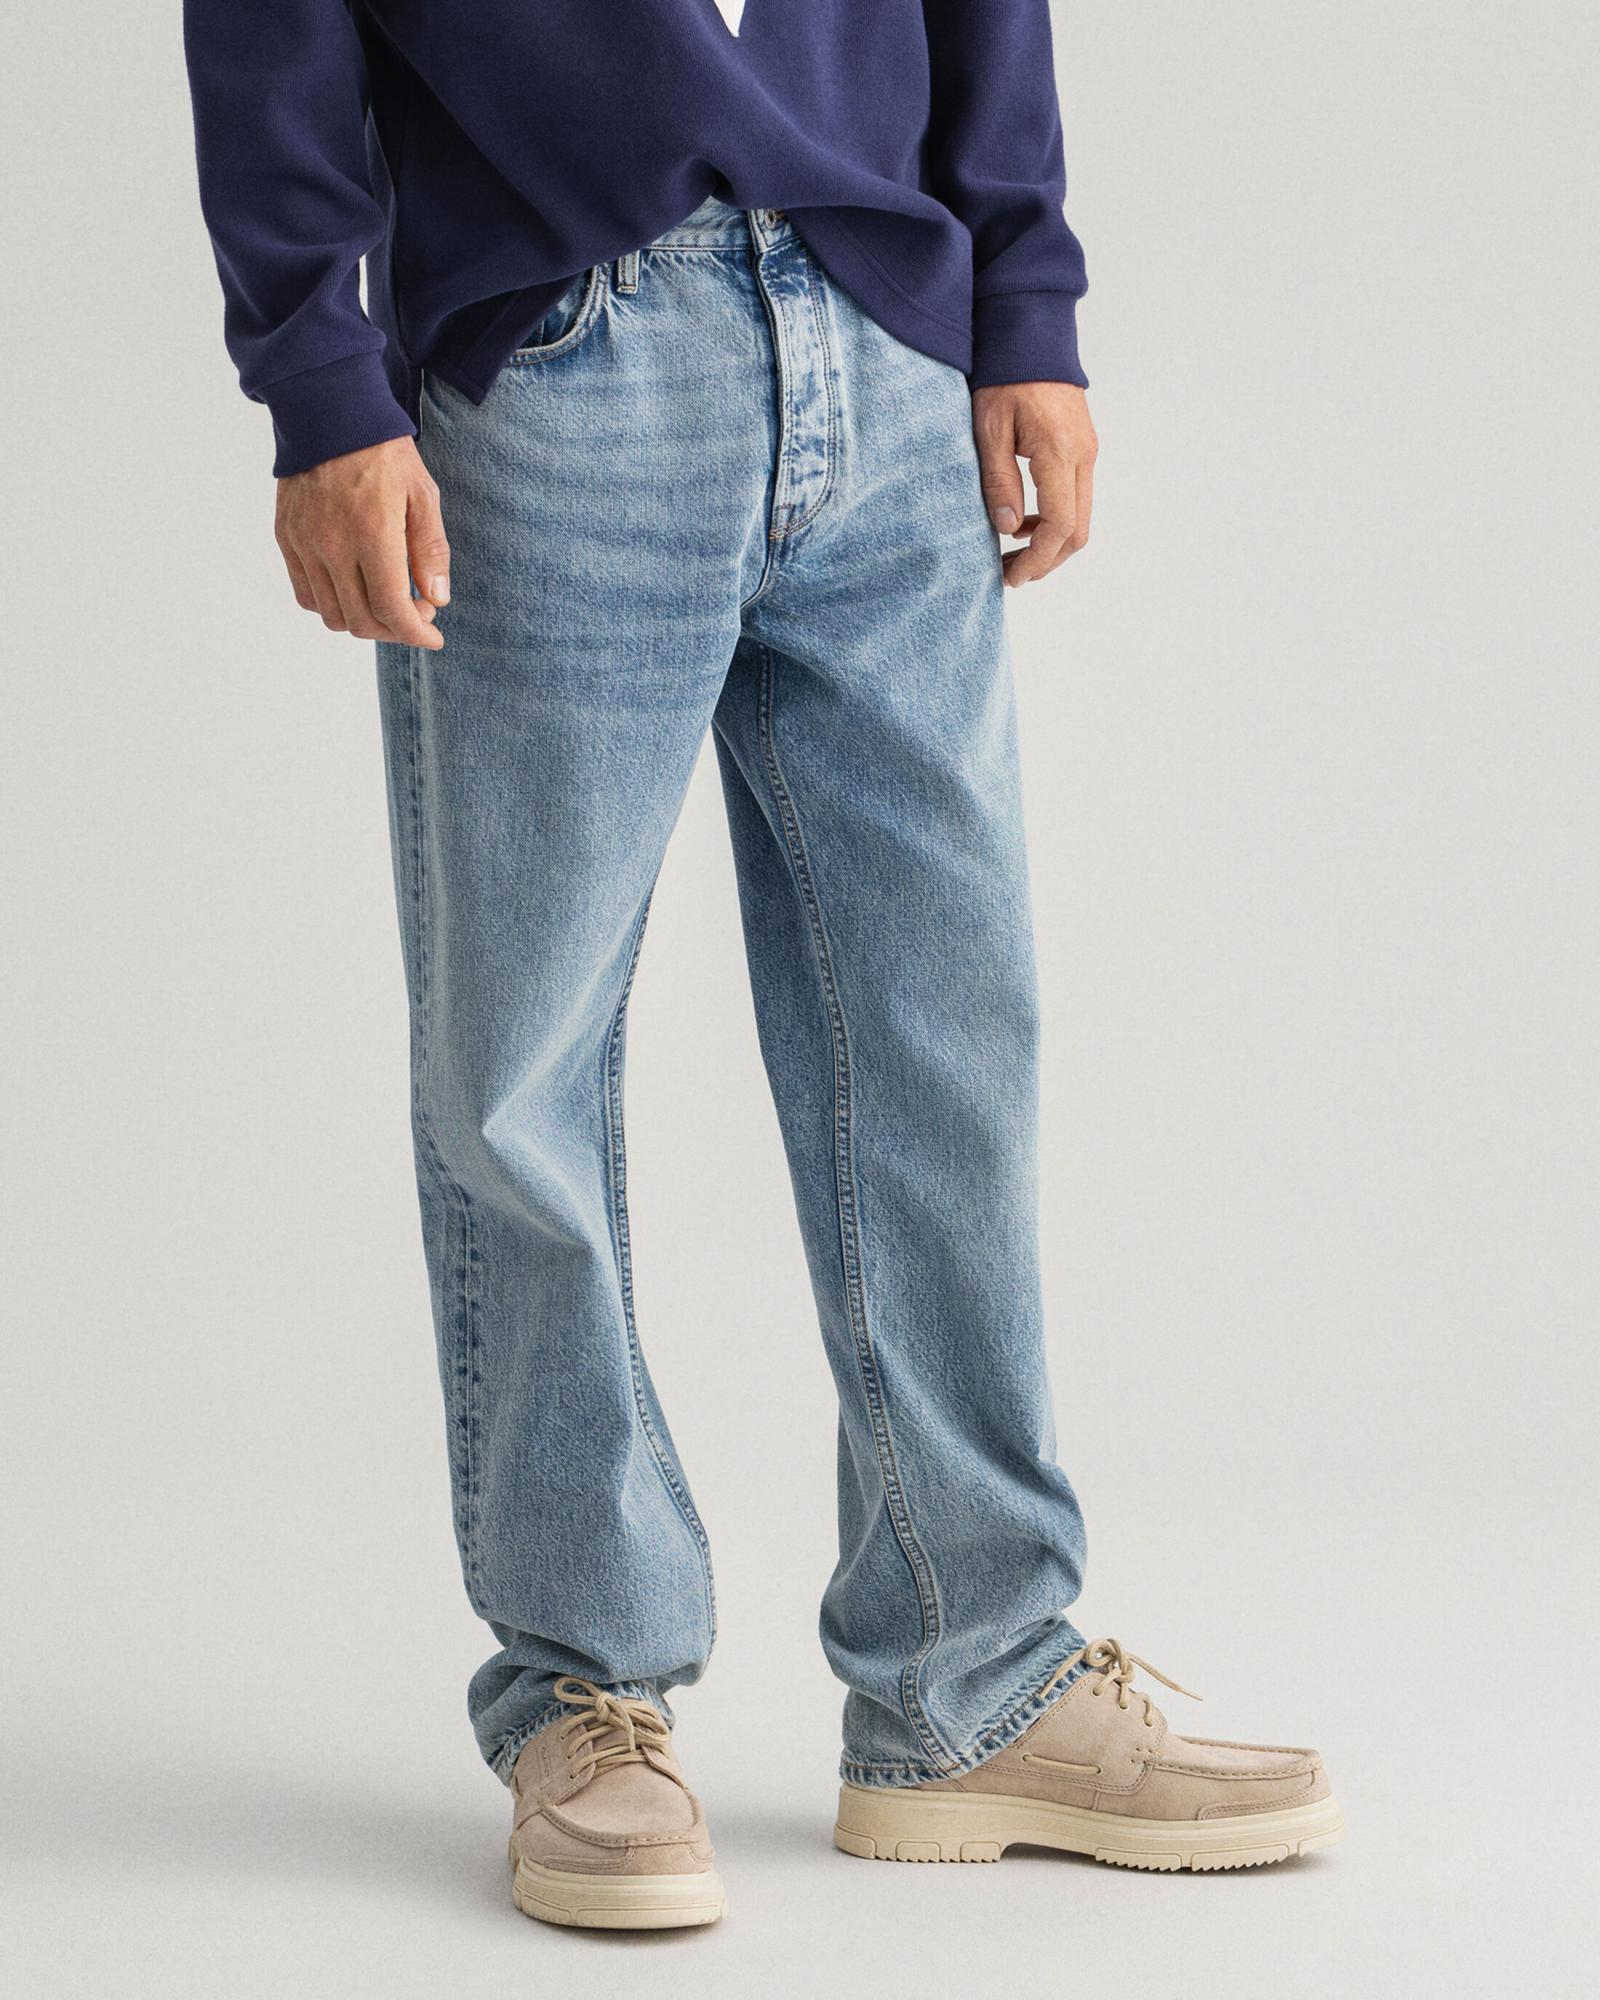 Мужские джинсы Gant, синие, цвет синий, размер 44